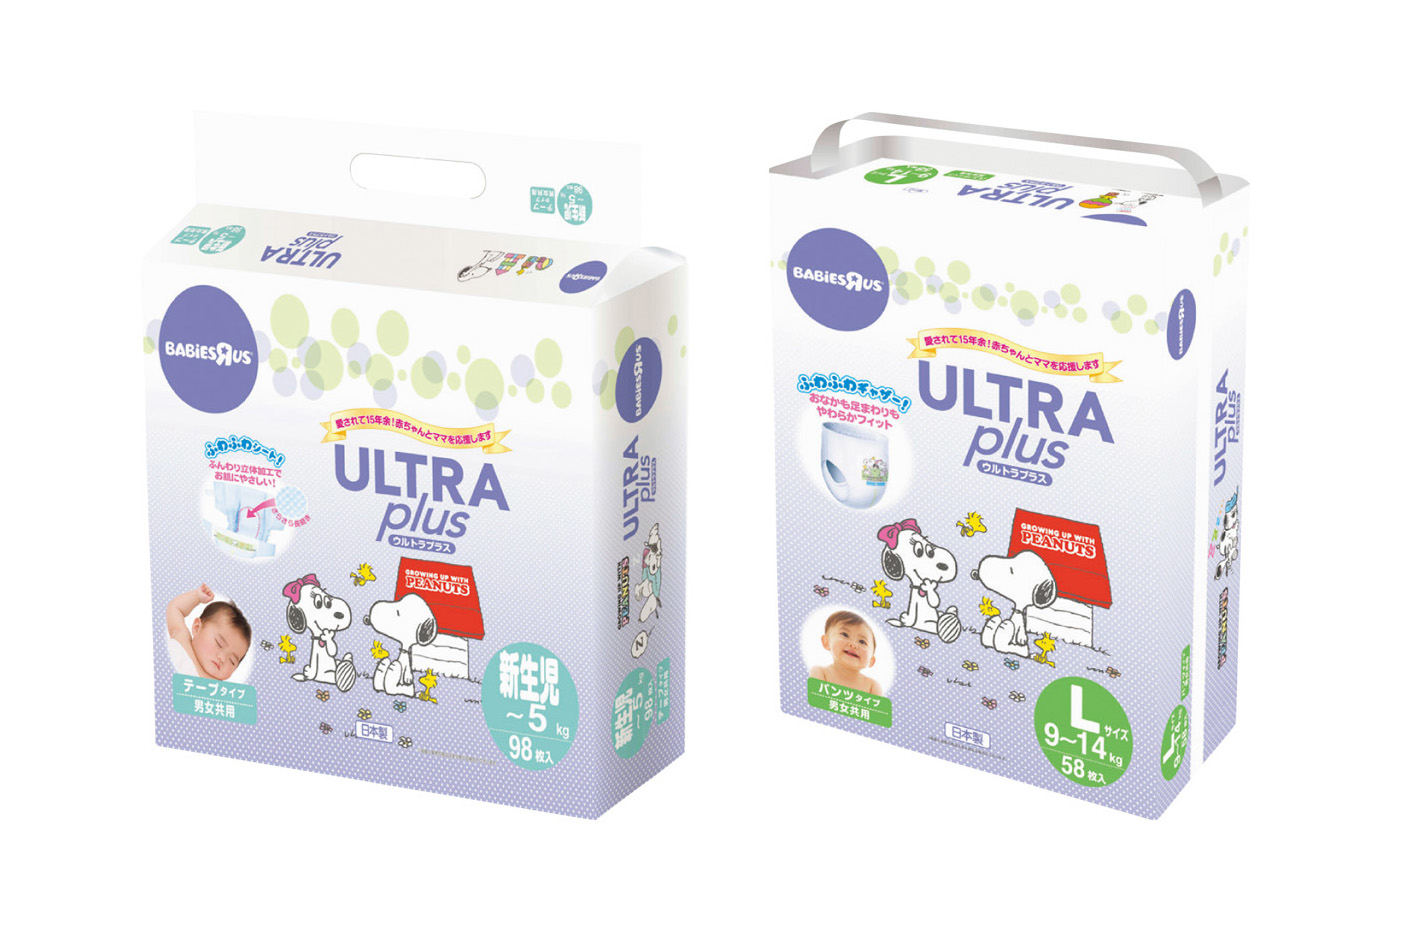 日本トイザらス ベビーザらスの紙おむつ Ultra Plus ウルトラプラス を8月下旬にリニューアル発売 日本トイザらス株式会社のプレスリリース